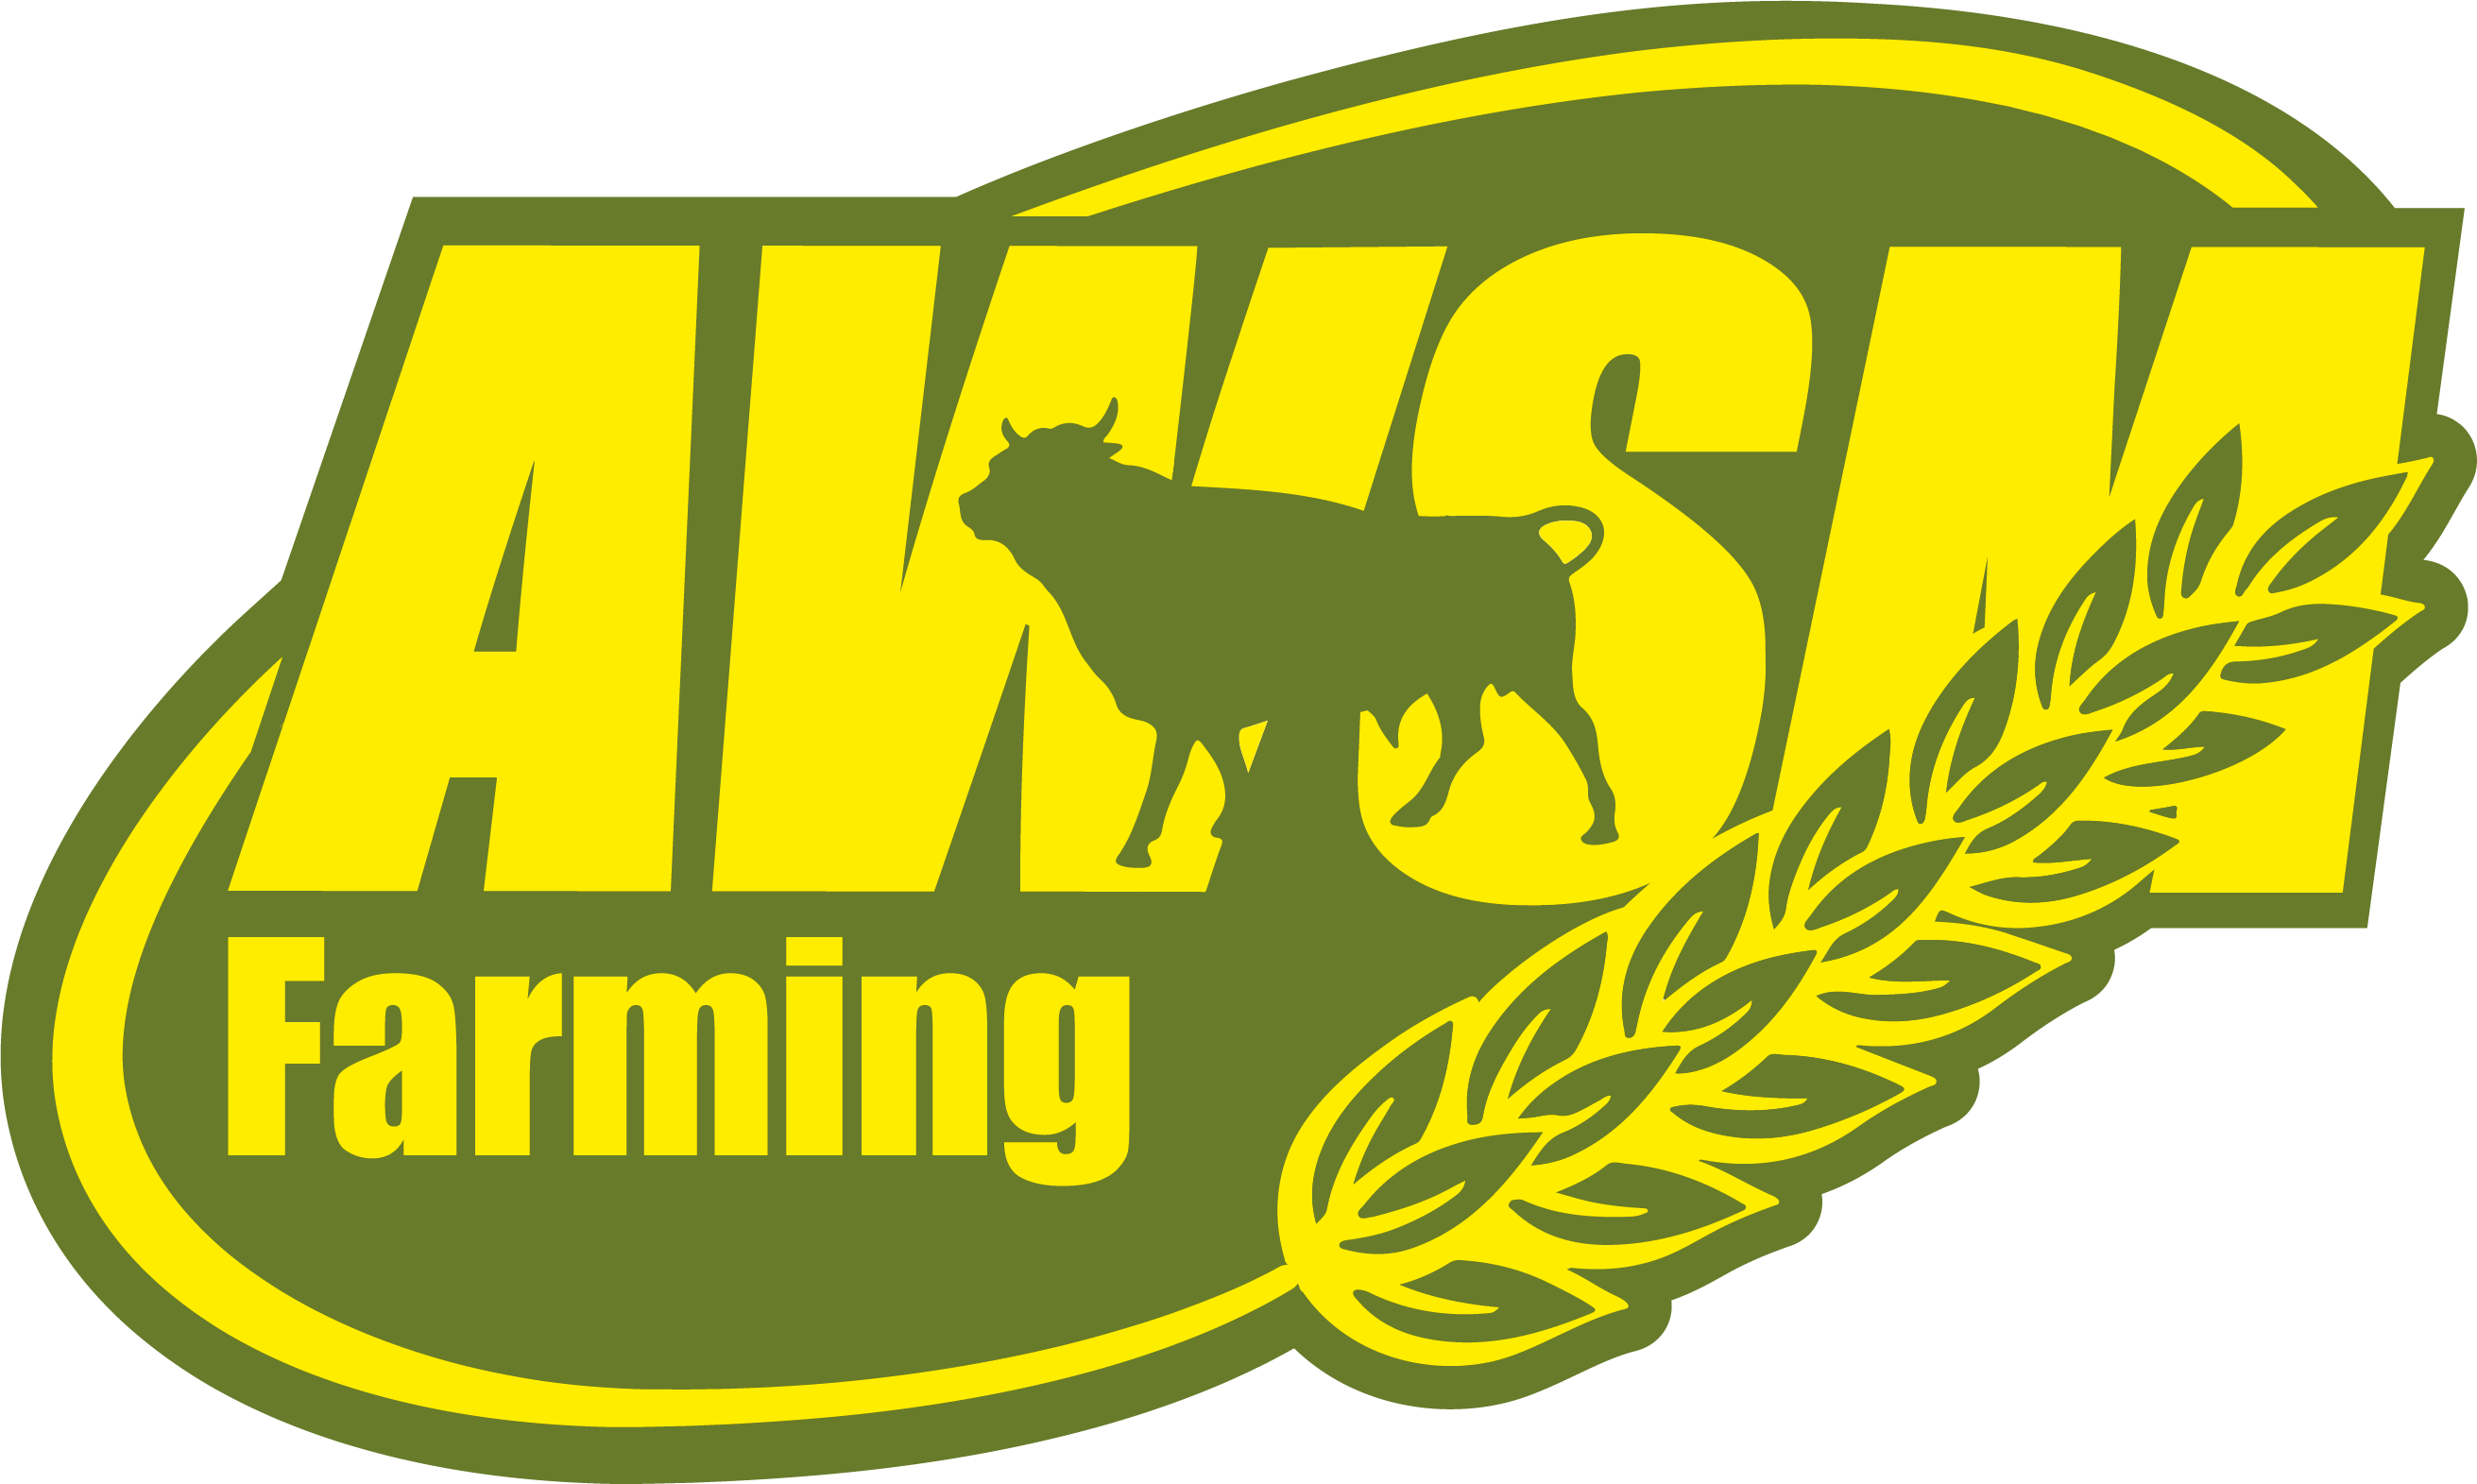 AWSM Farming Ltd